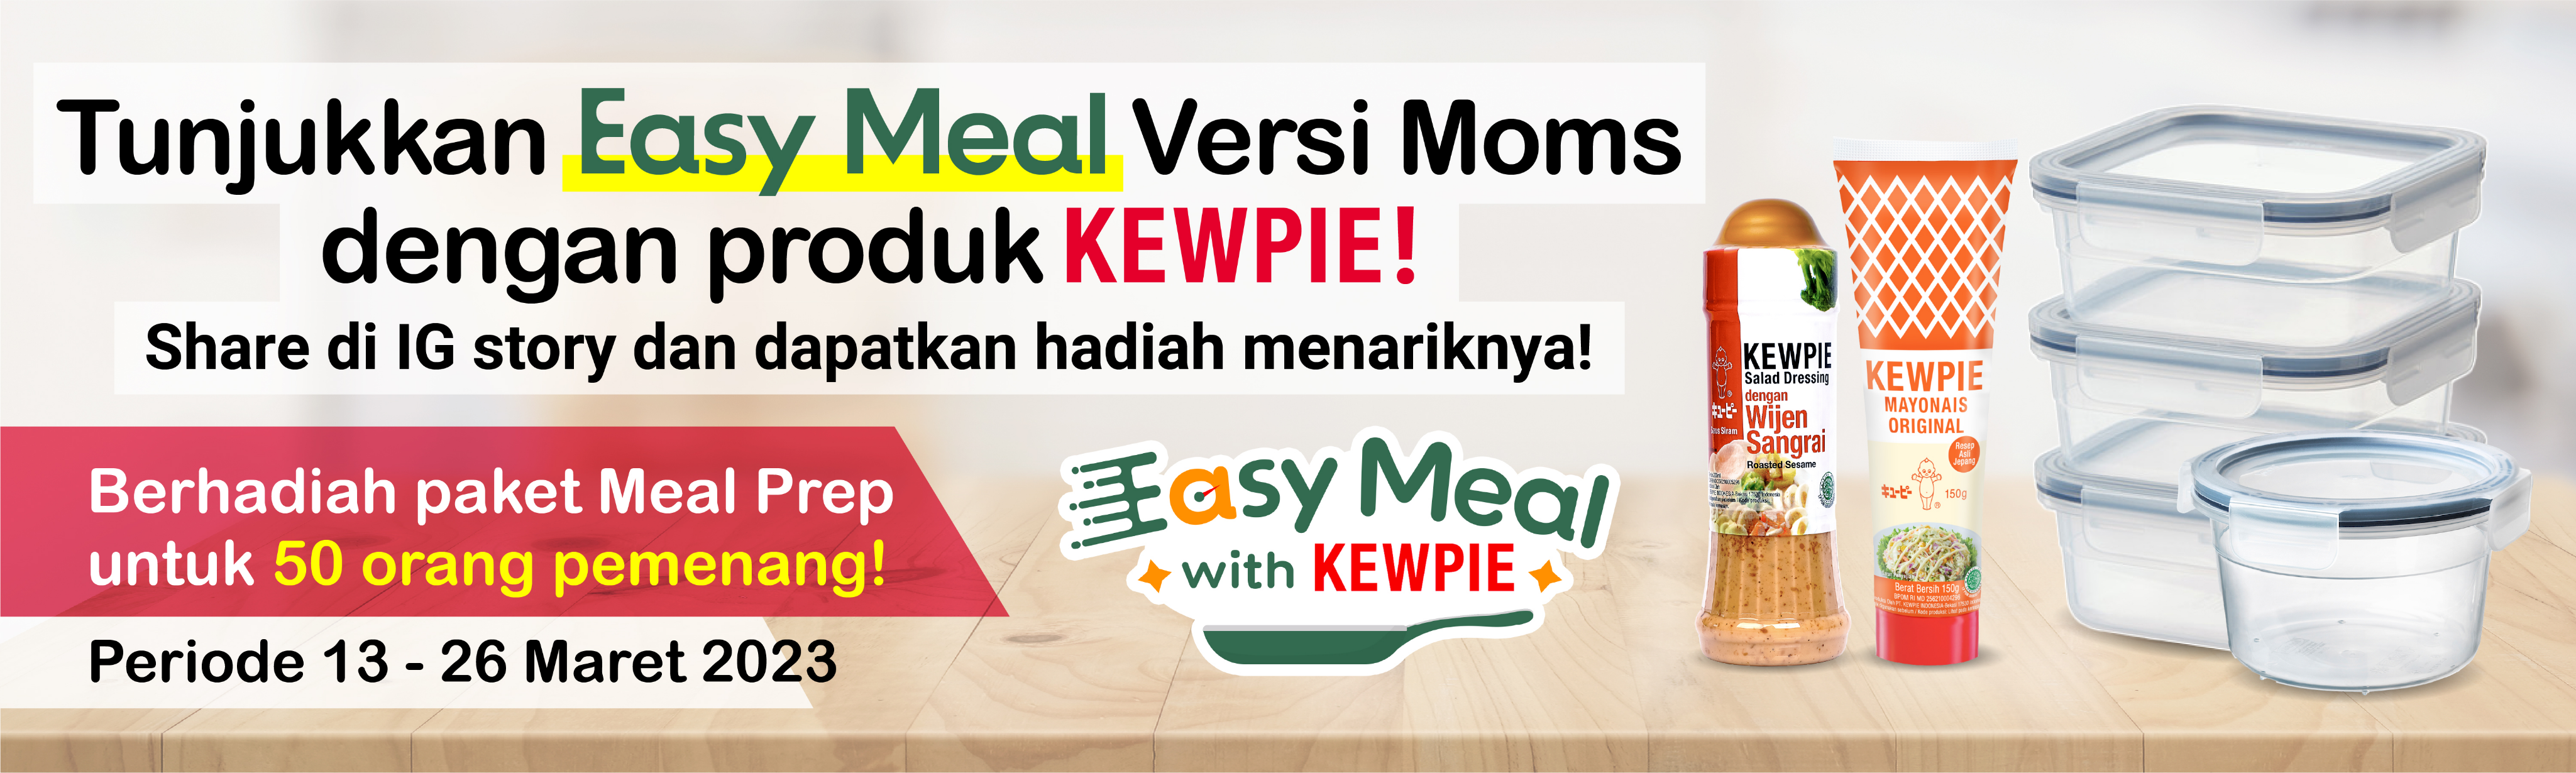 Tunjukkan Easy Meal versi Moms